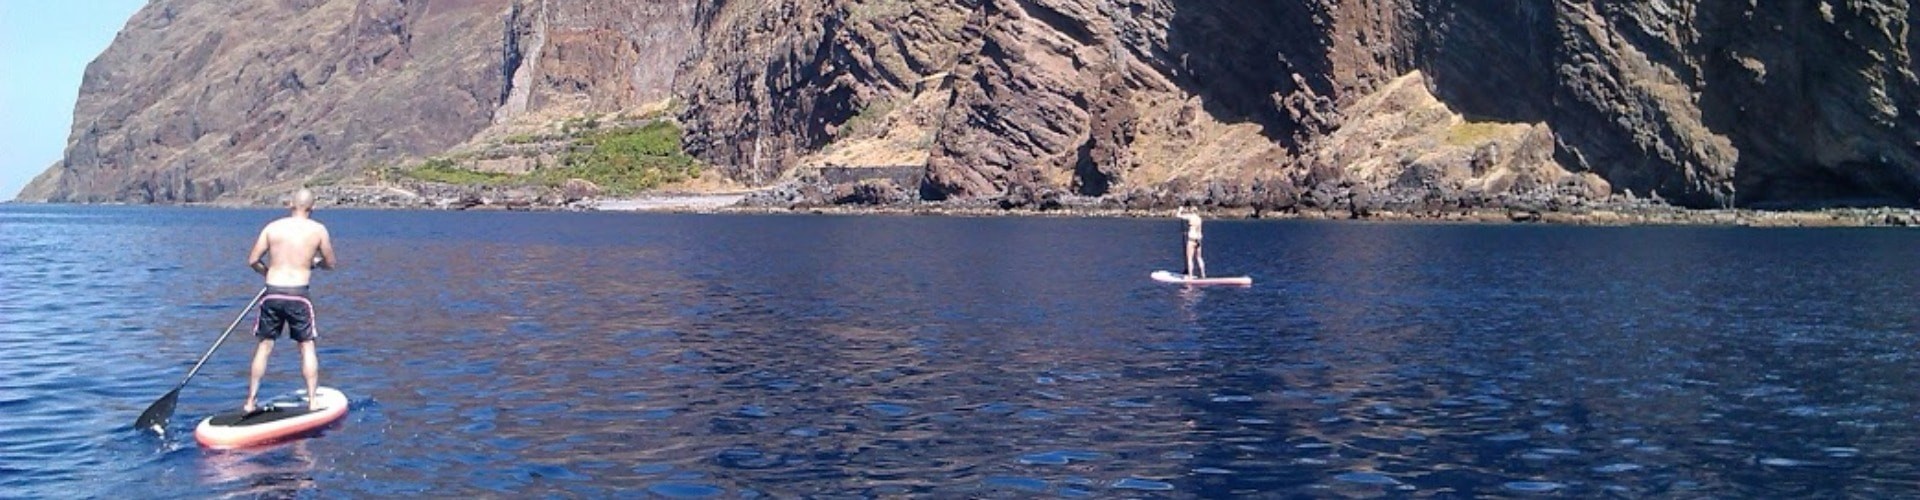 Stand Up Paddle na Ilha da Madeira